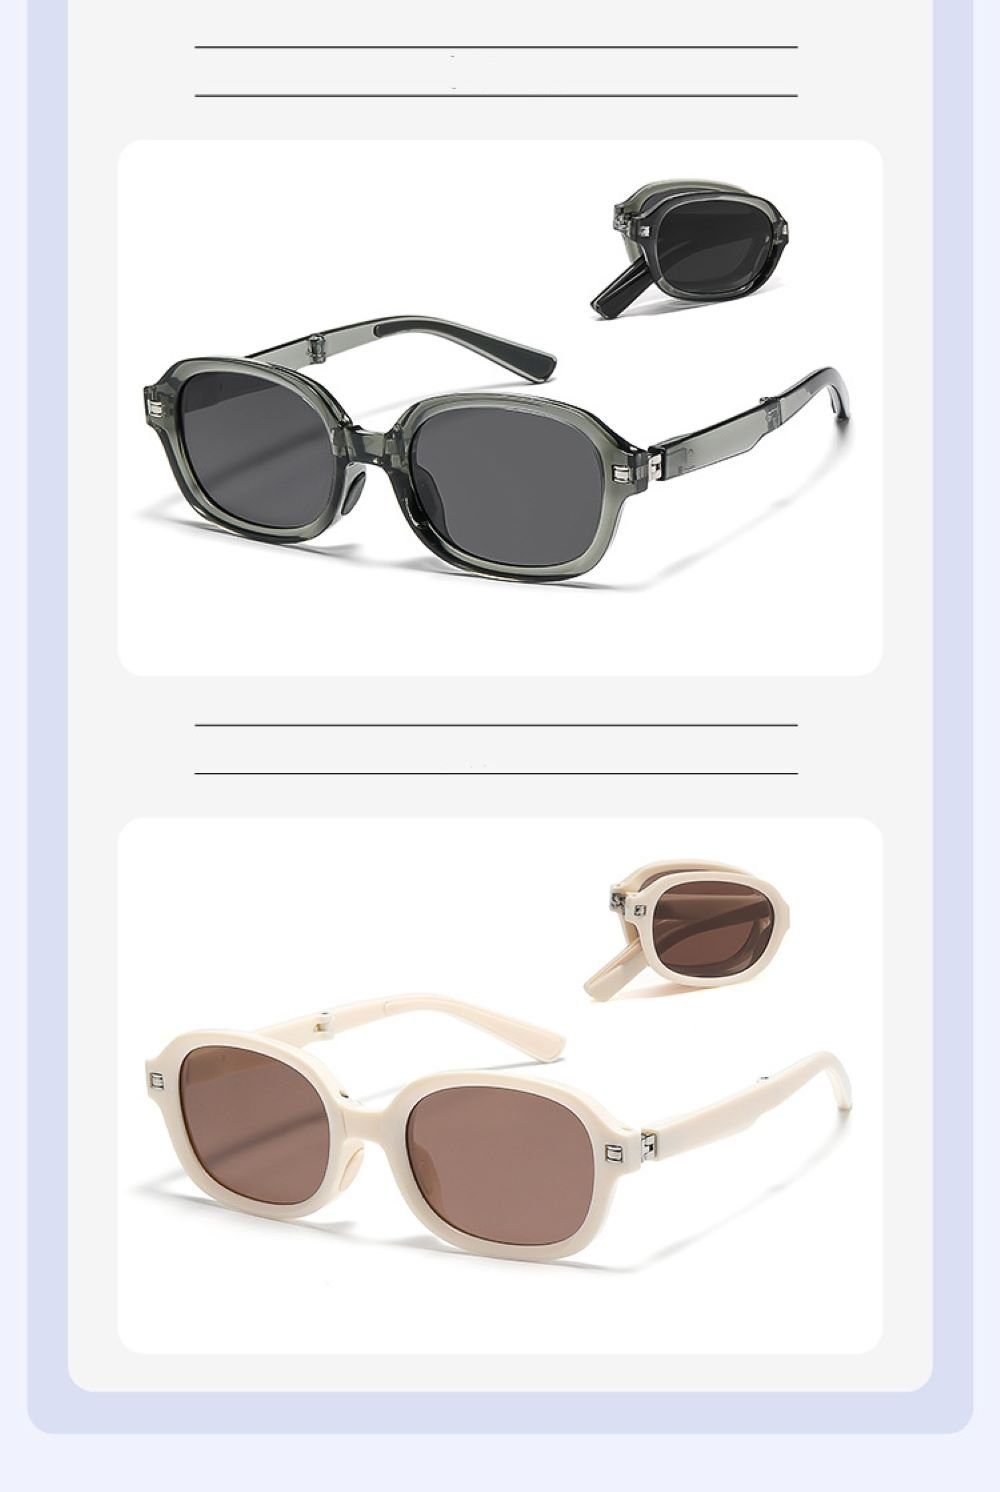 faltbar PACIEA Weiß PACIEA Schutz UV400 Sonnenbrille 100% Damen Sonnenbrille polarisiert Herren